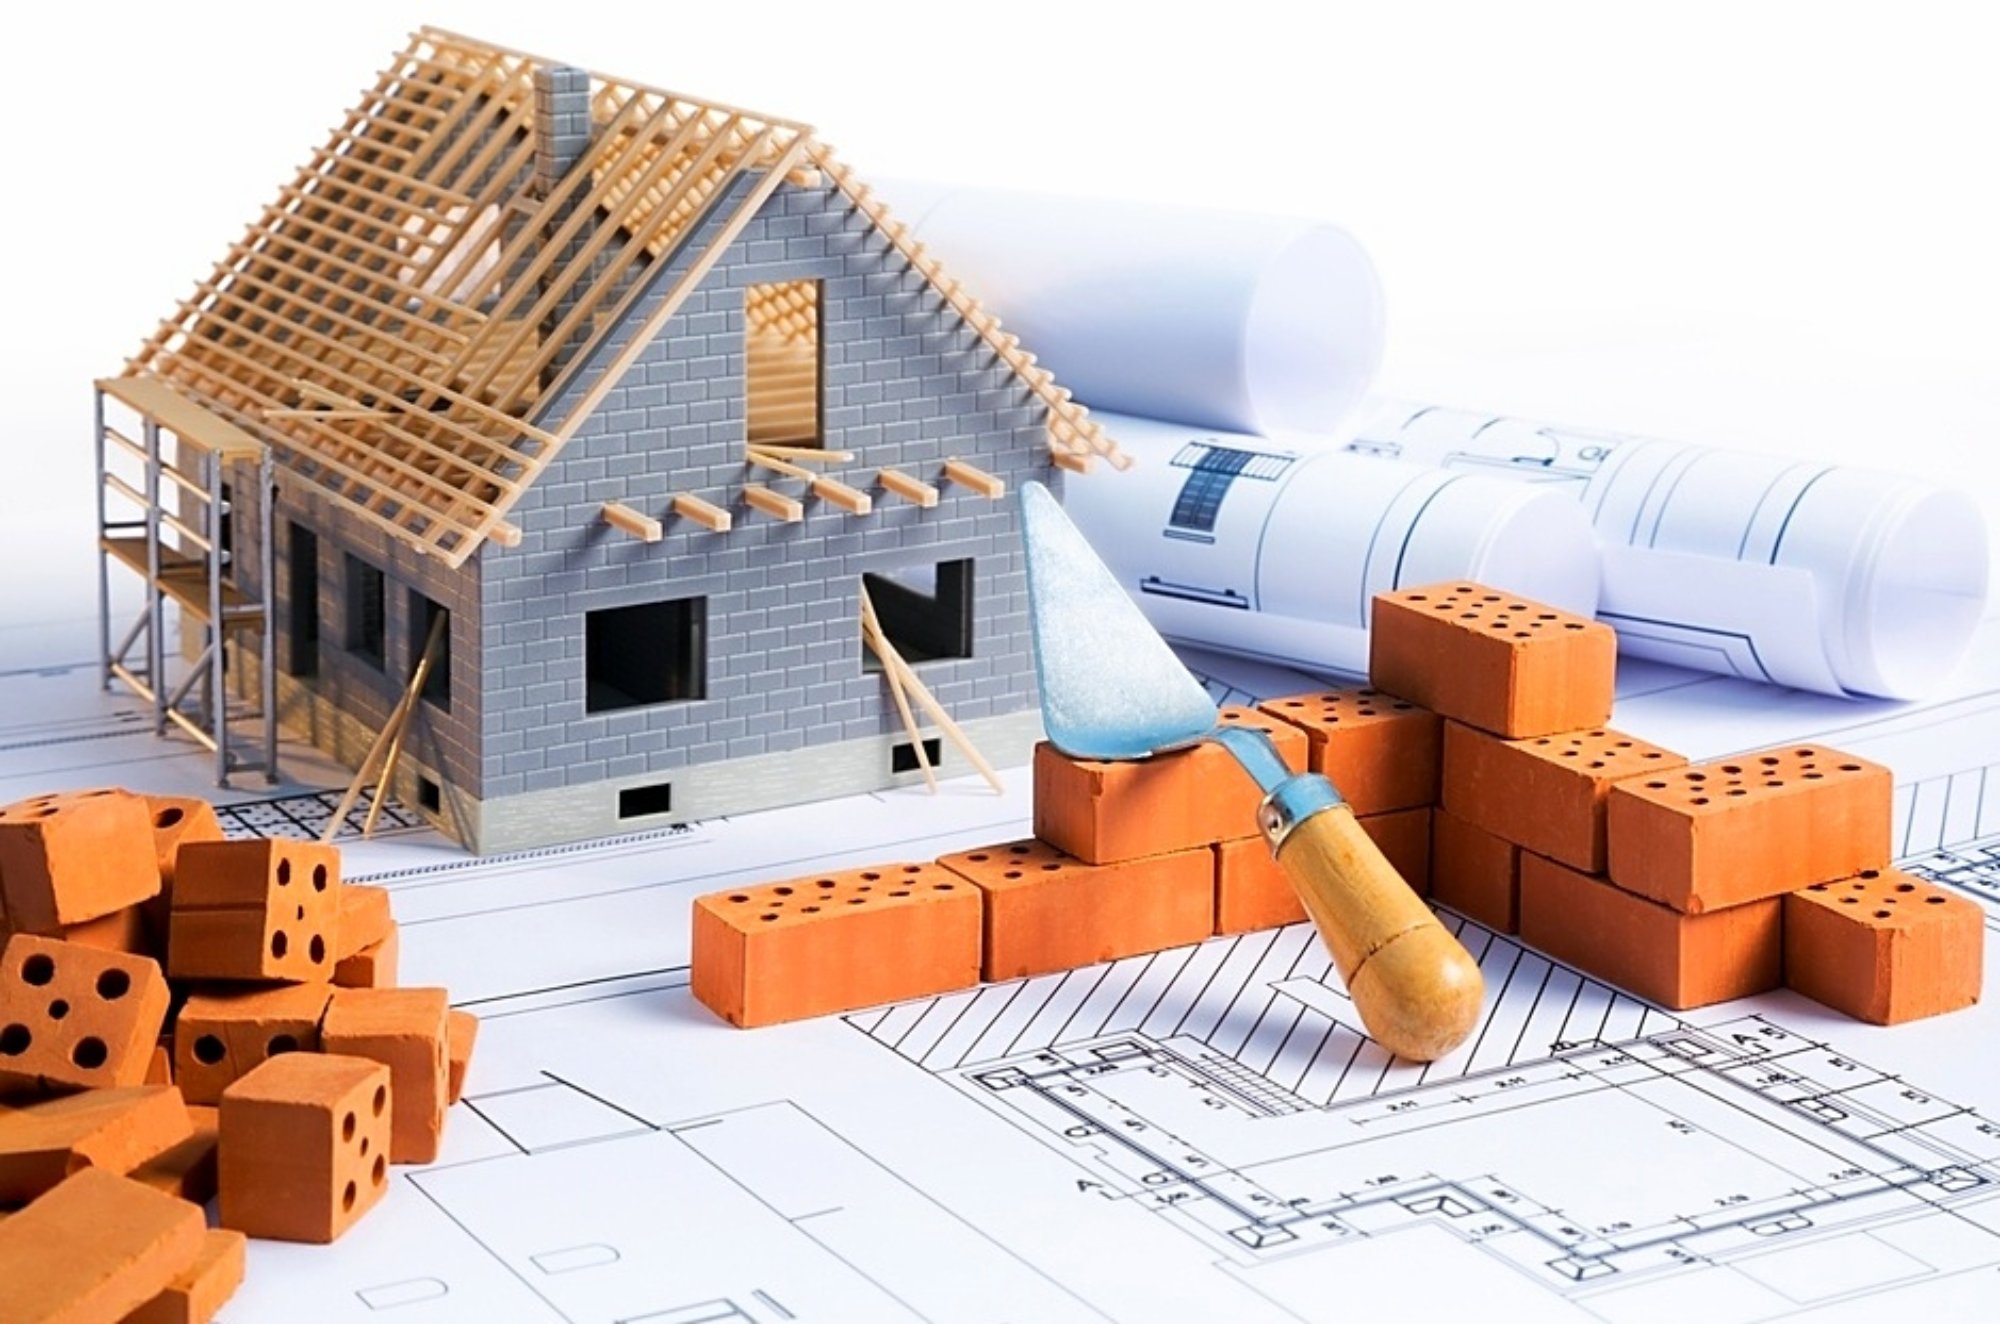 Poistite si budúcnosť vášho domu správnym výberom stavebnej firmy